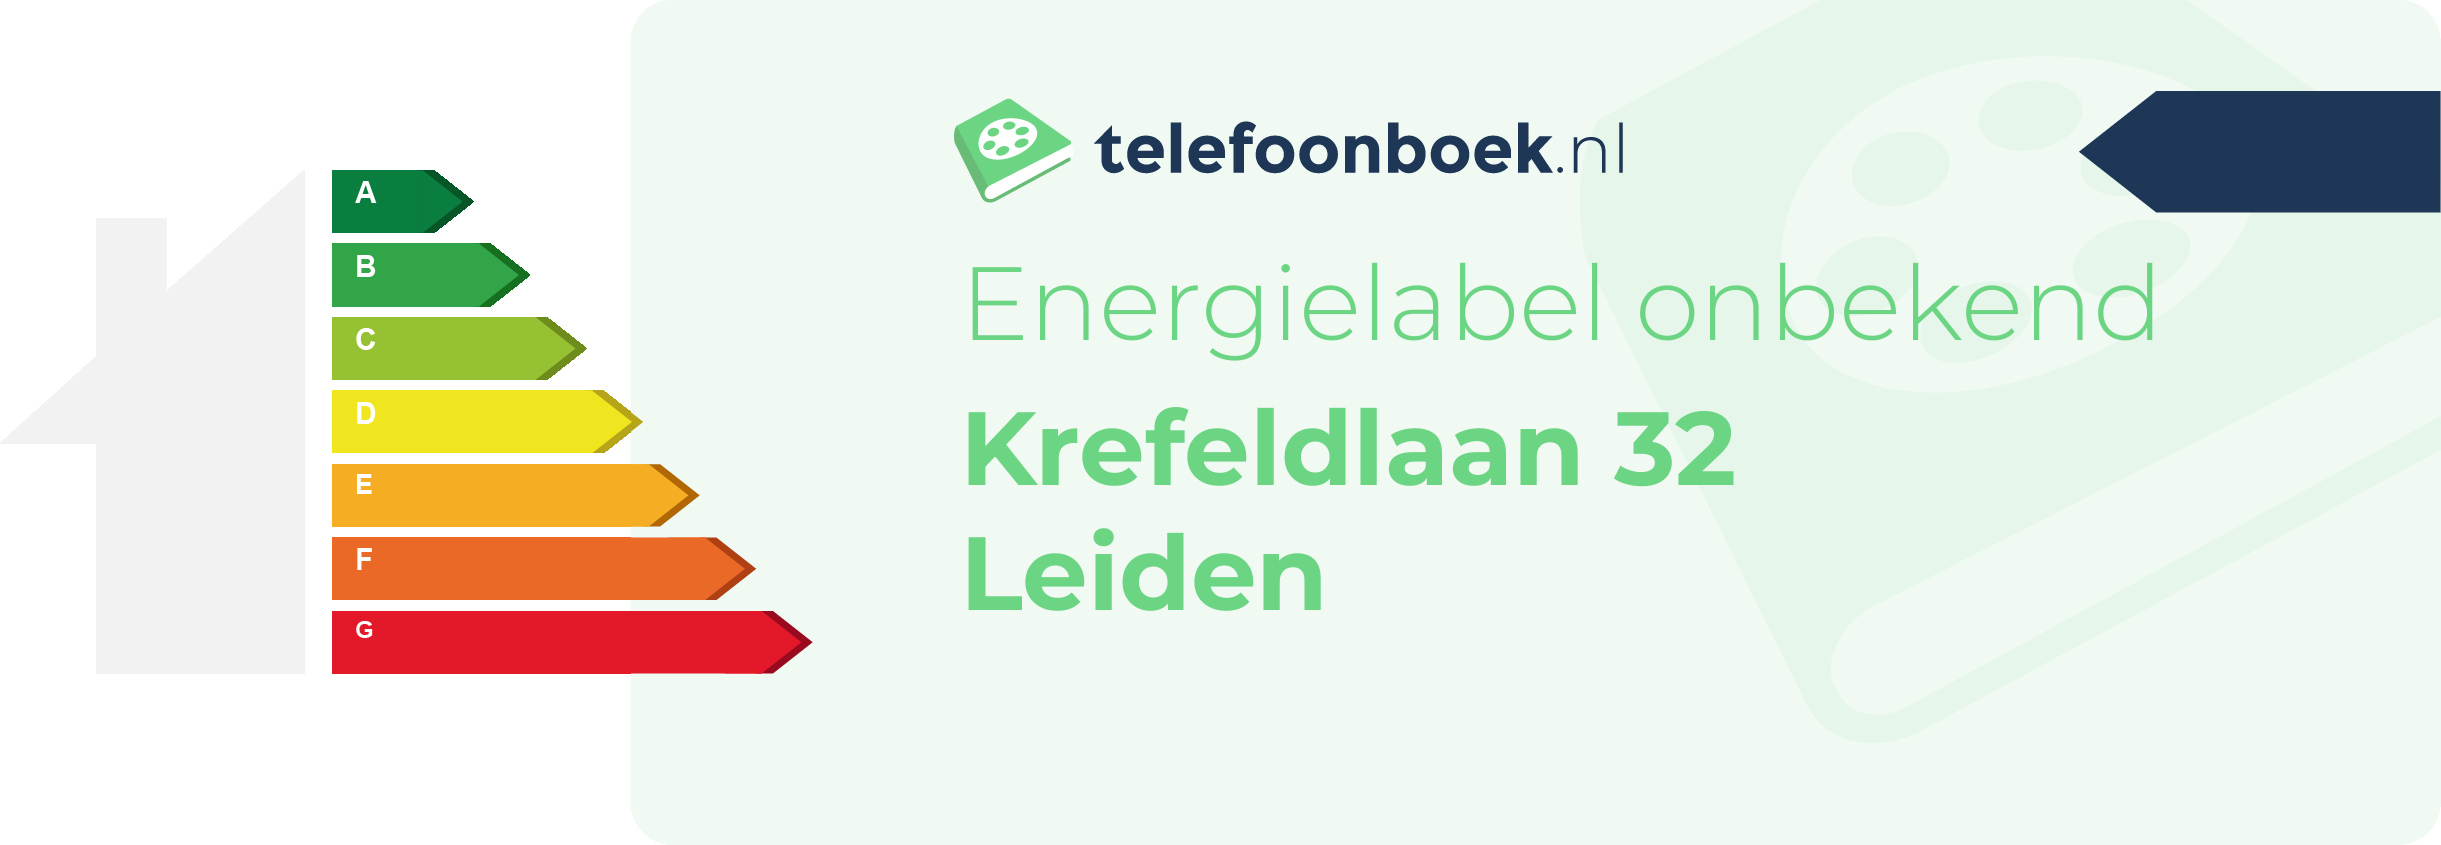 Energielabel Krefeldlaan 32 Leiden